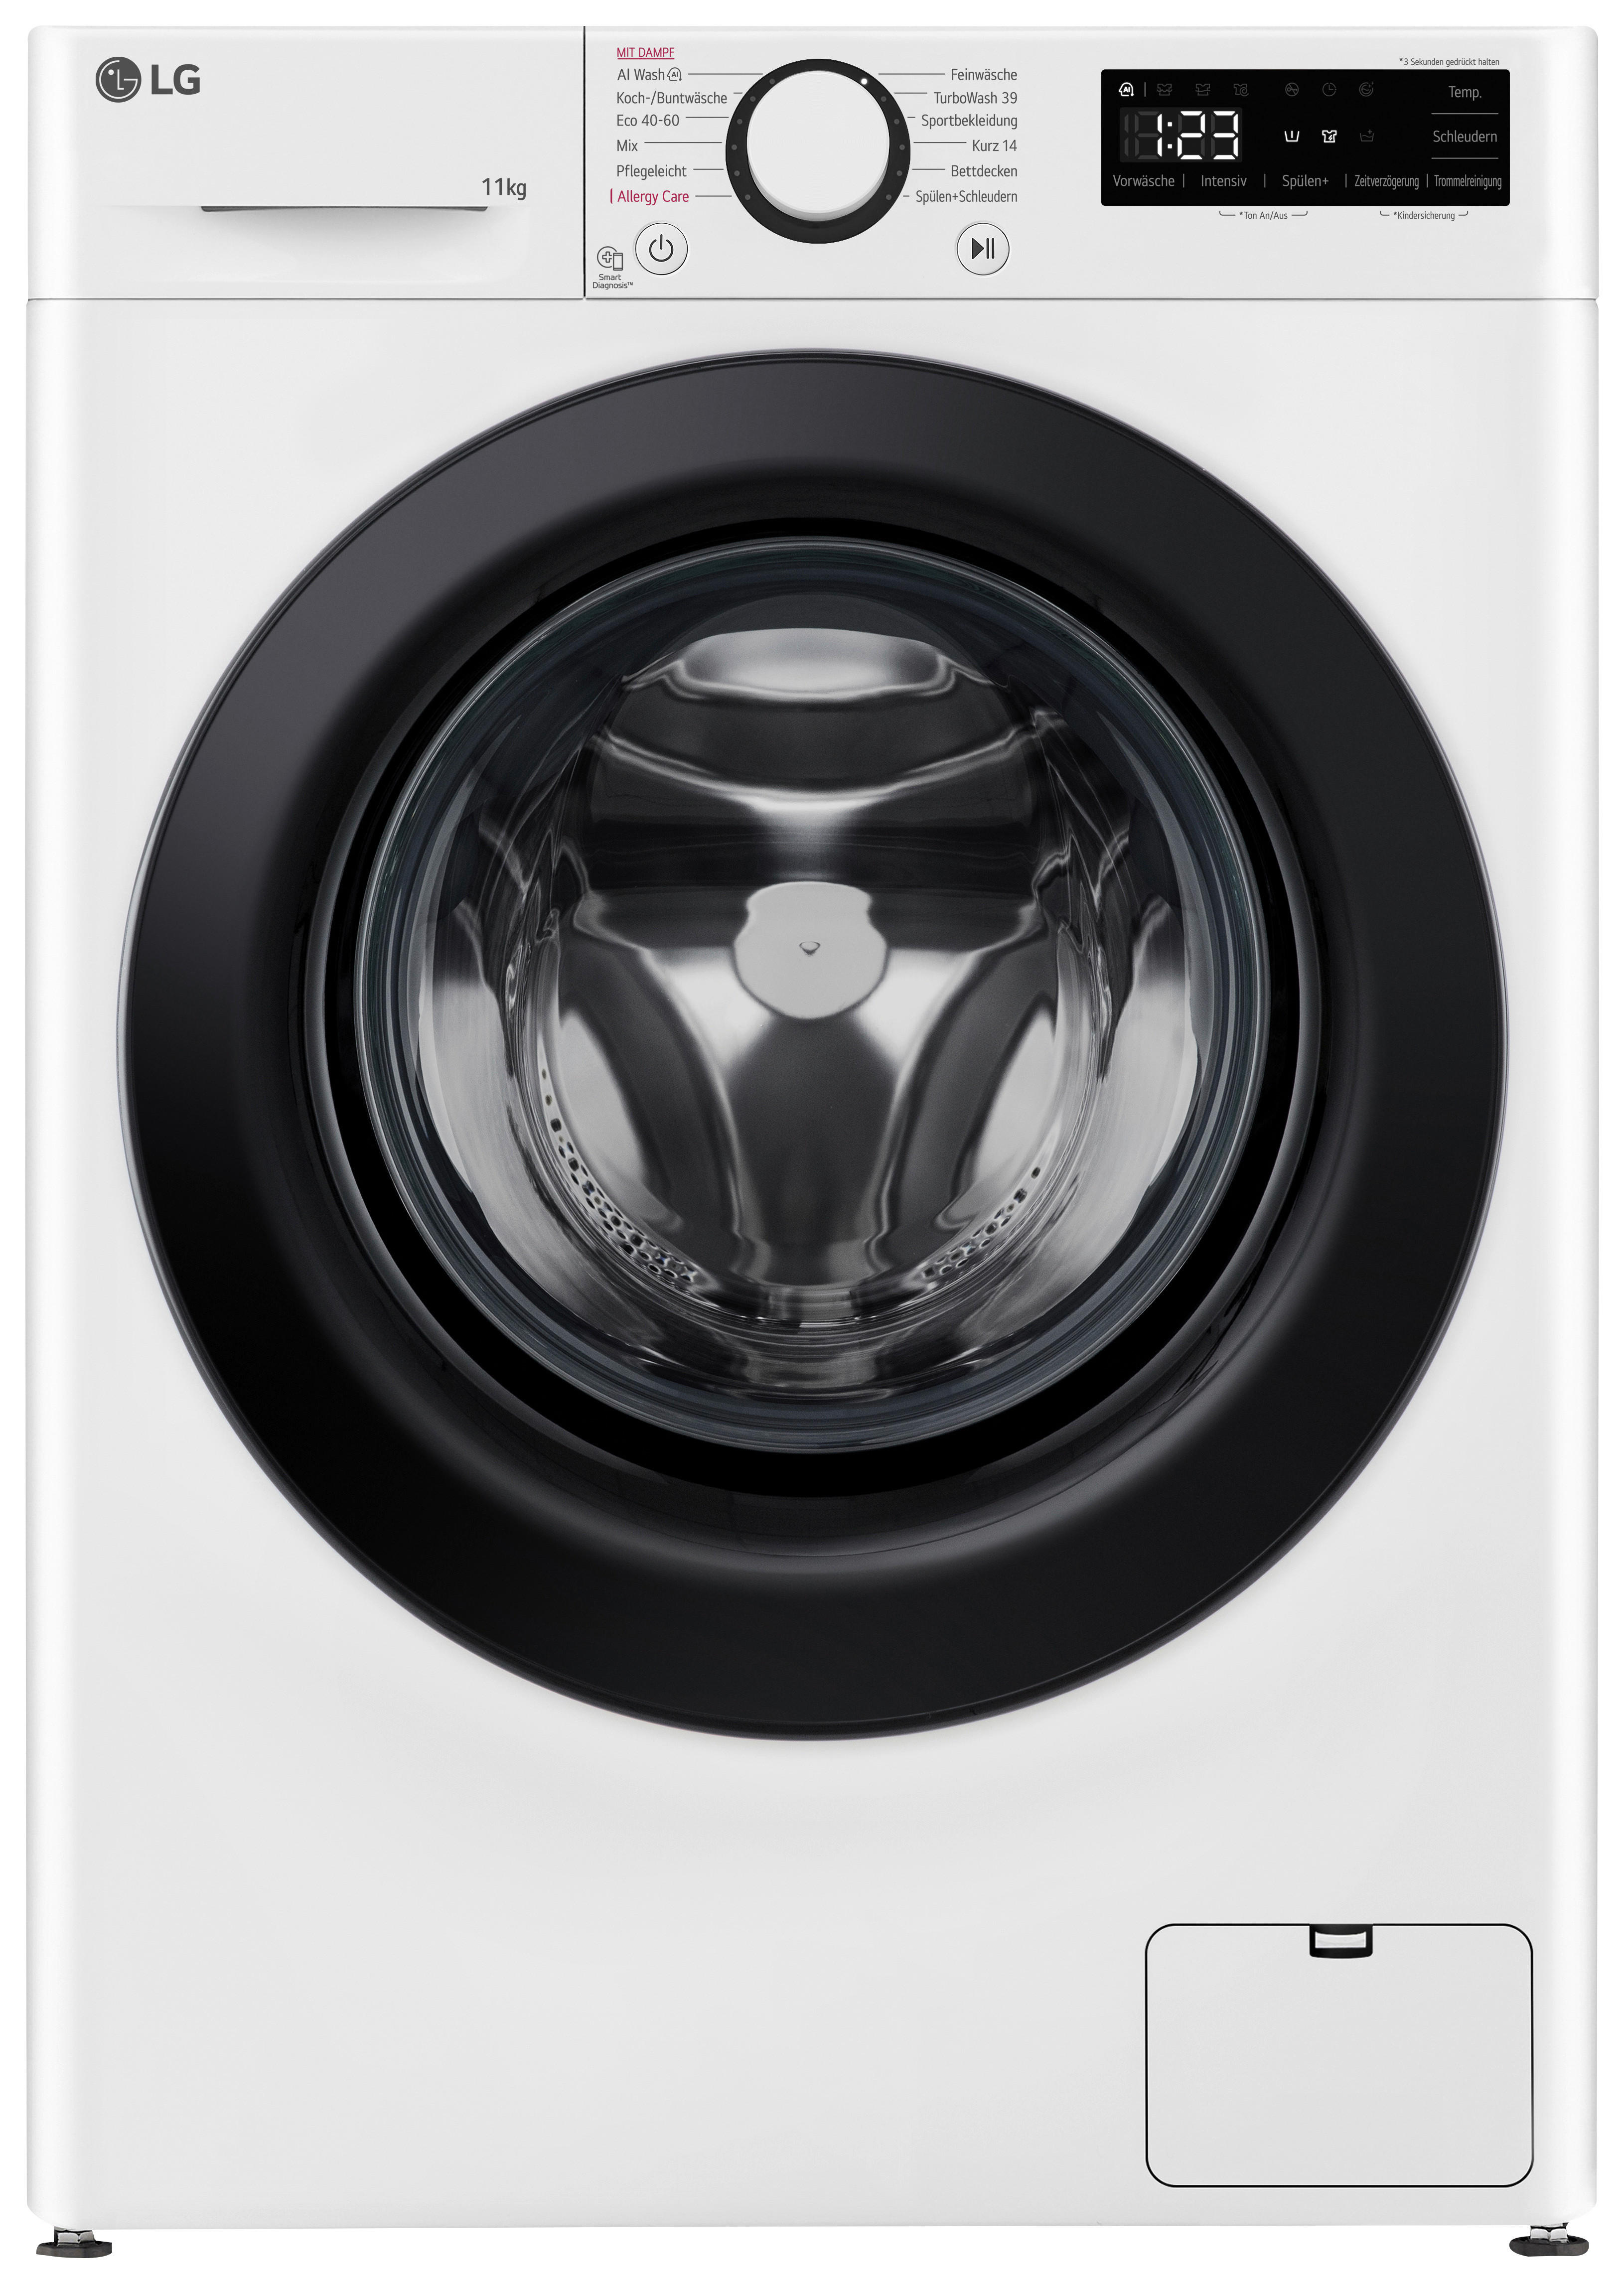 LG Waschvollautomat F4WR4016 weiß B/H/T: ca. 60x85x62 cm Waschvollautomat F4WR4016 - weiß (60,00/85,00/62,00cm) - LG